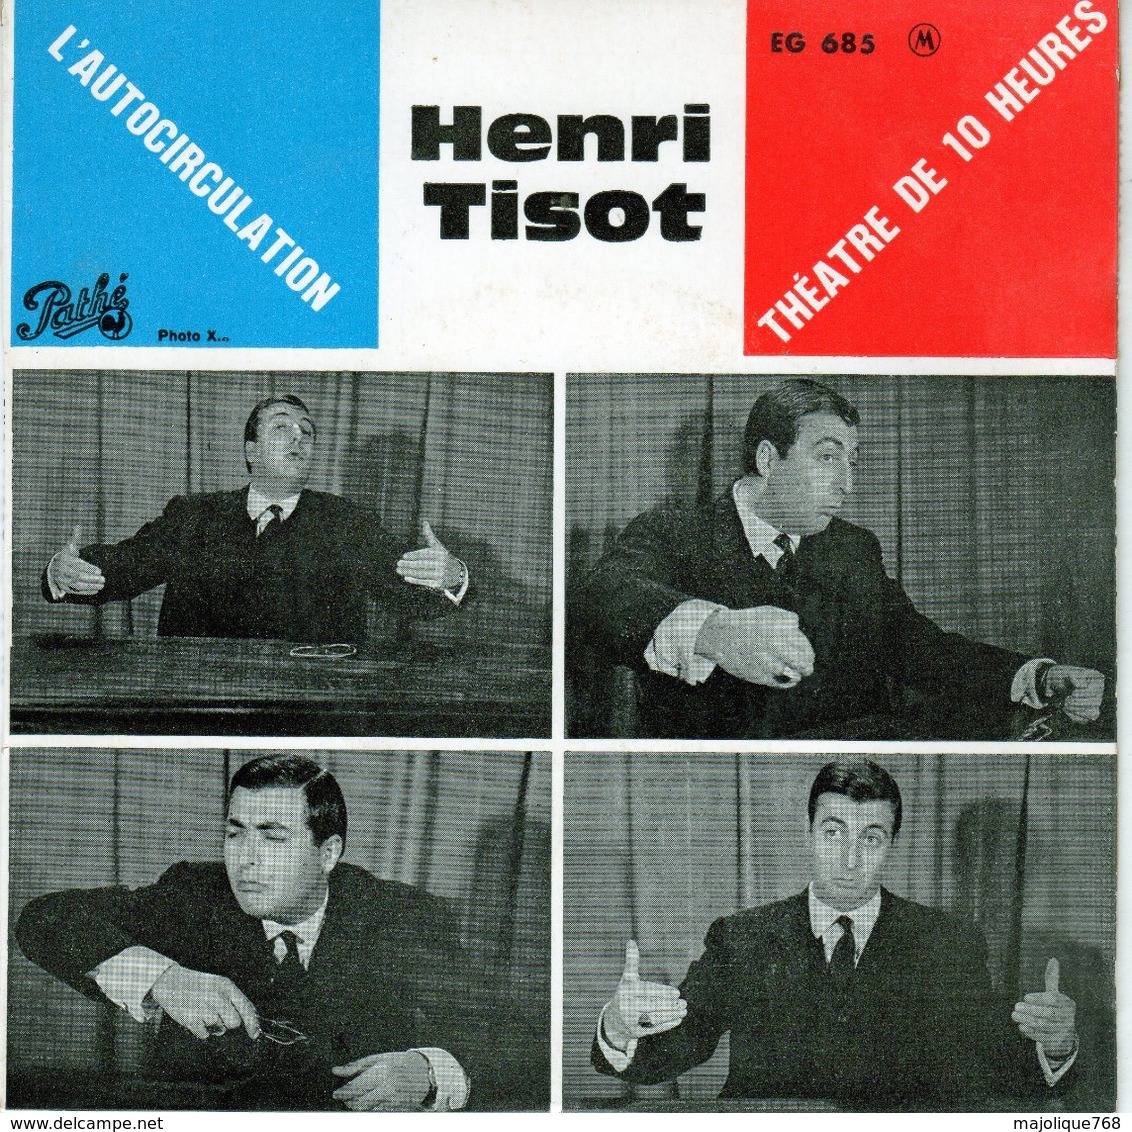 Henri Tisot - L'Autocirculation - Pathé EG 685 - 1962 - Comiche